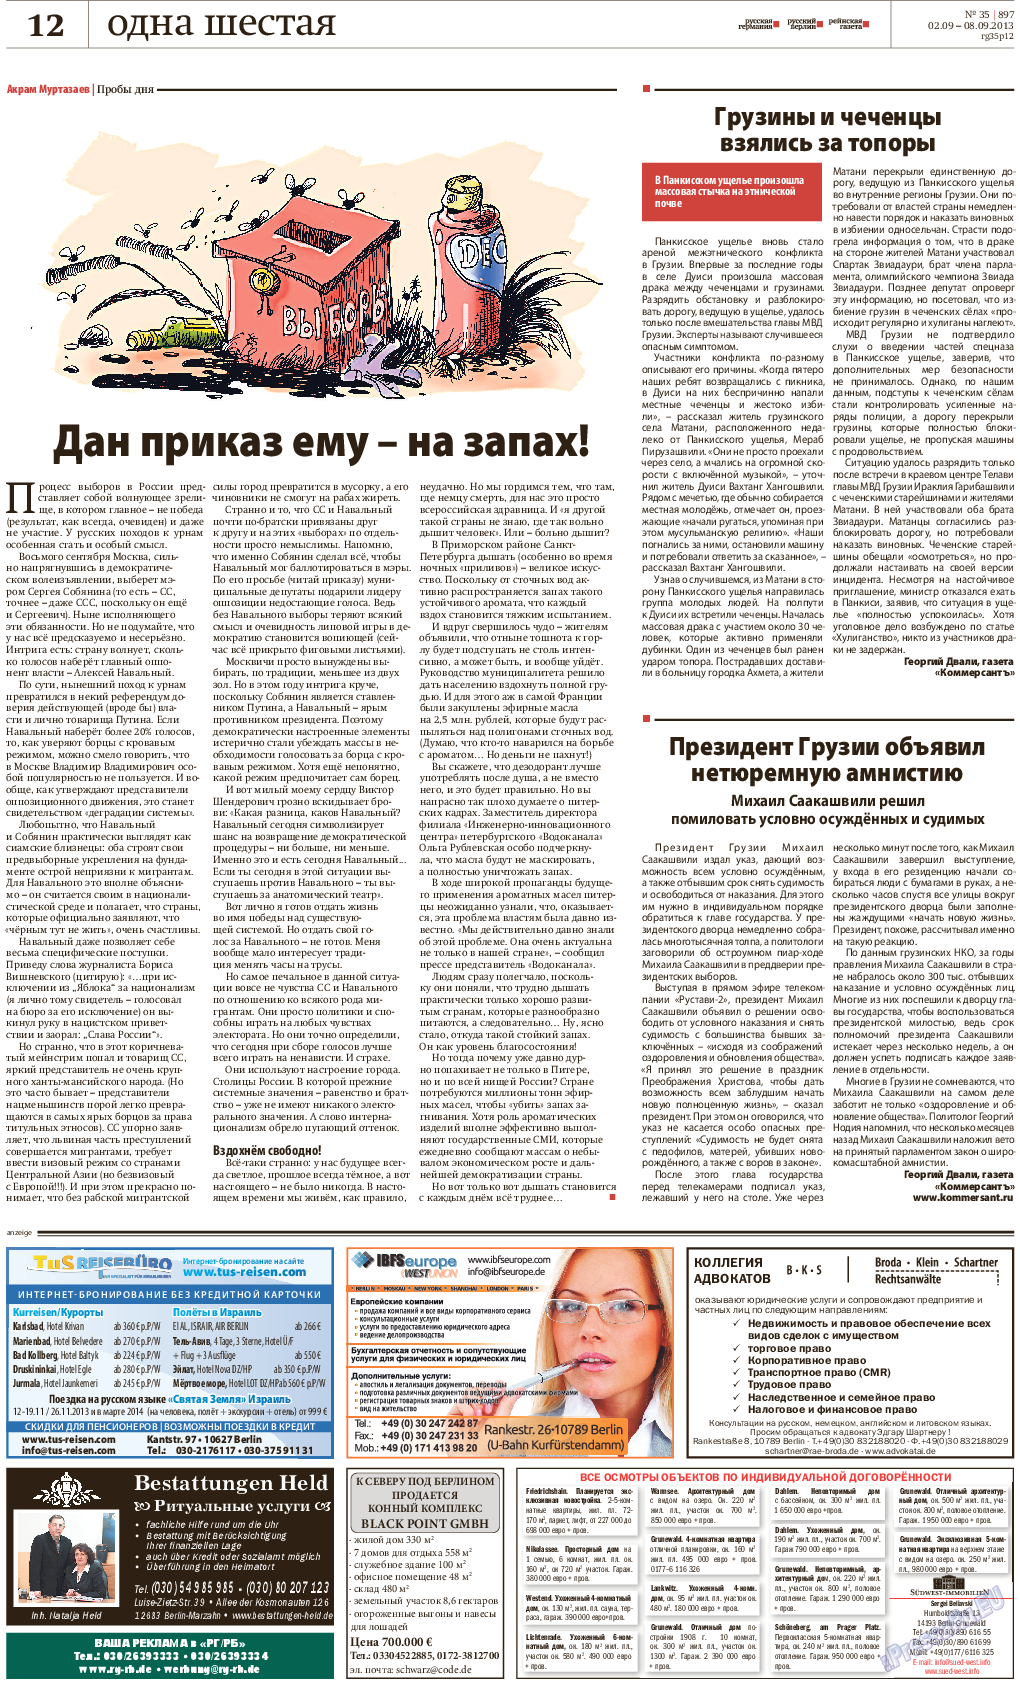 Рейнская газета, газета. 2013 №35 стр.12